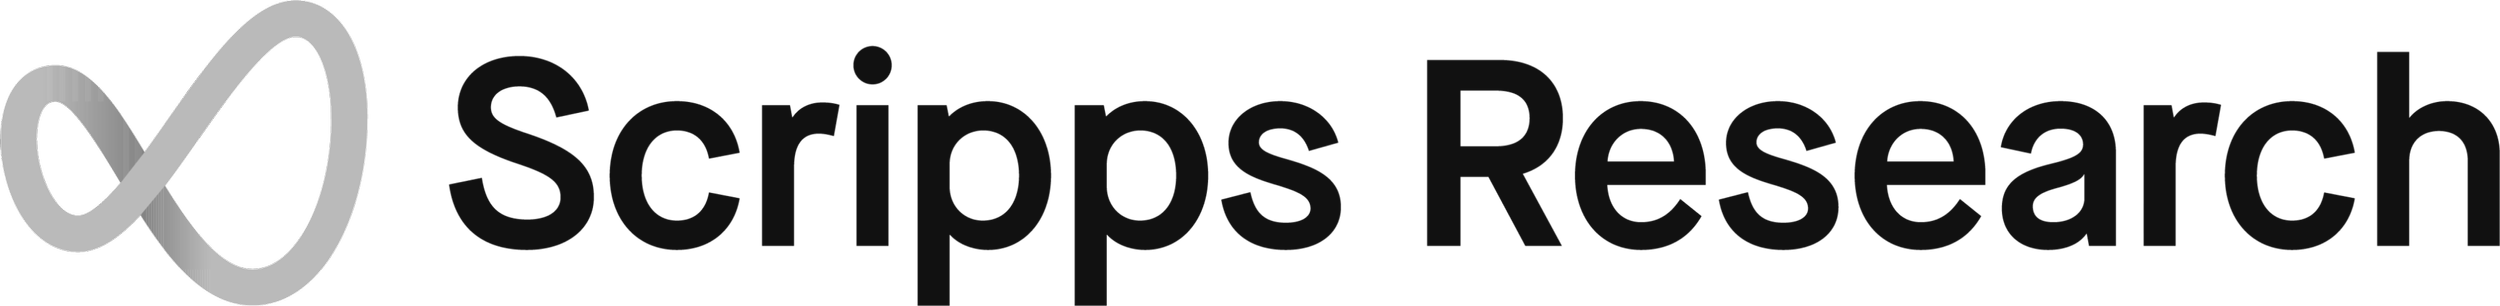 scripps-logo_black.png